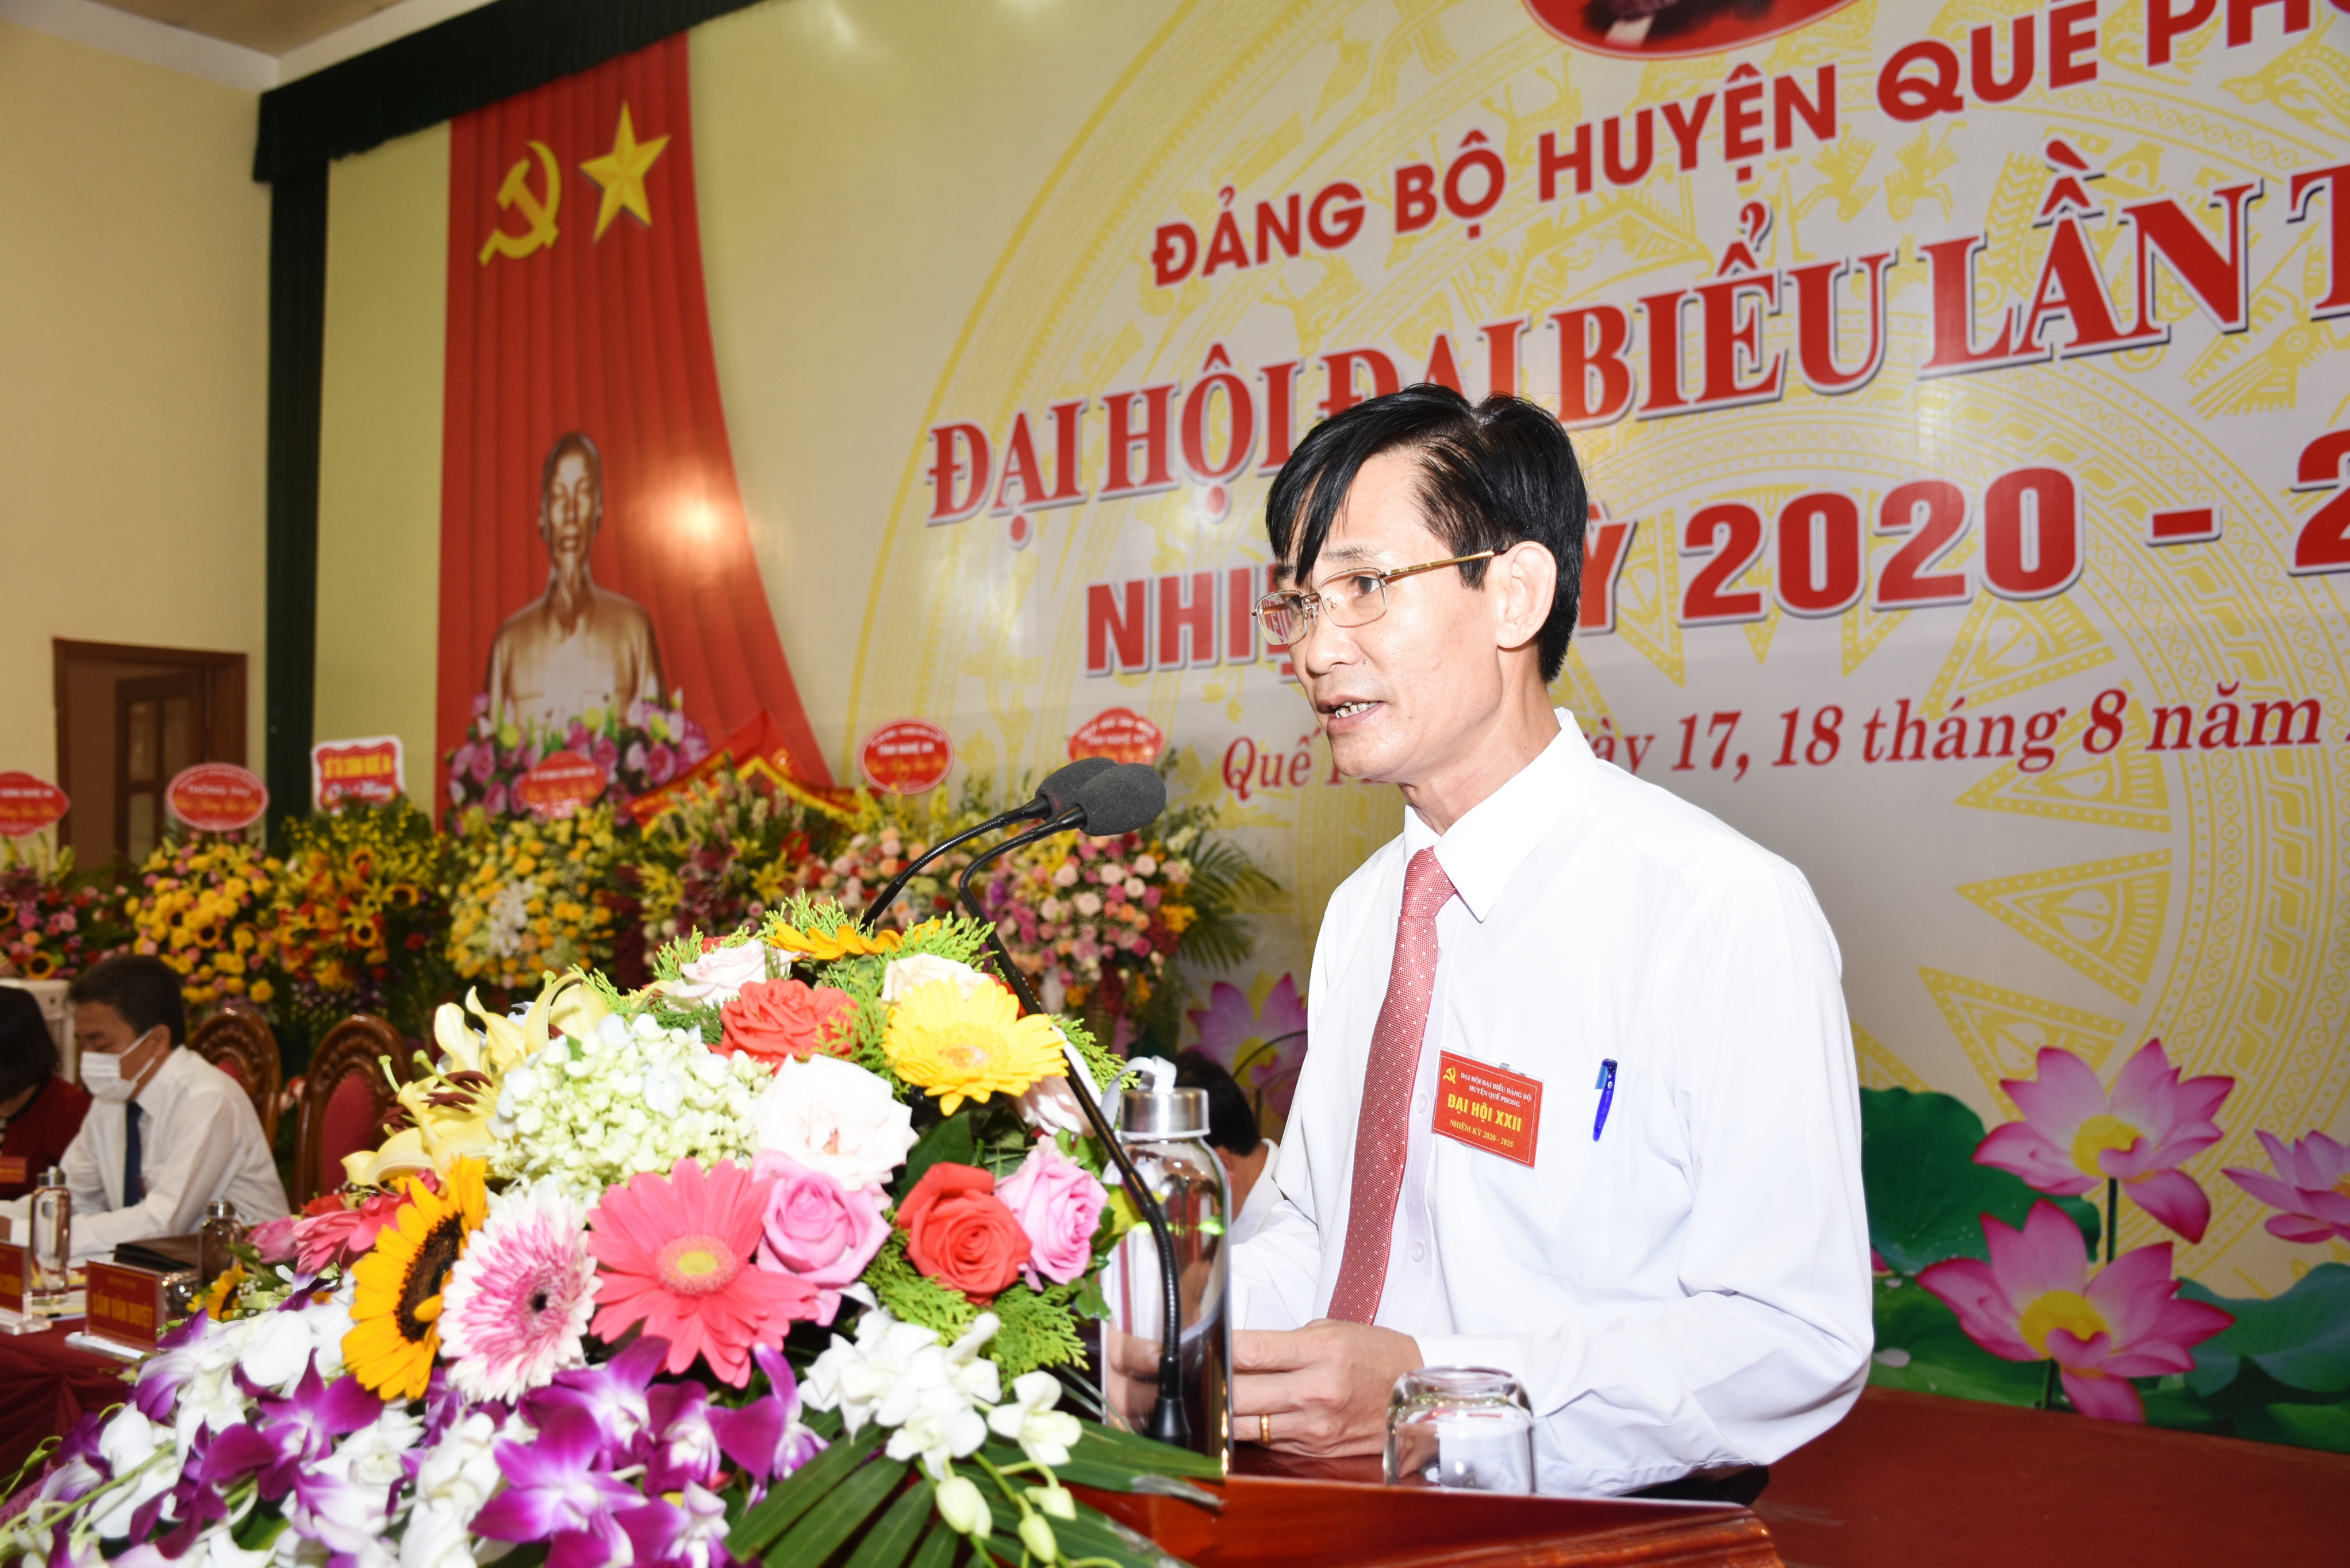 Đồng chí Trương Minh Cương - Bí thư Huyện ủy khóa XXI tiếp tục được bầu giữ chức Bí thư Huyện ủy Quế Phong nhiệm kỳ 2020-2025. Ảnh: Thanh Lê